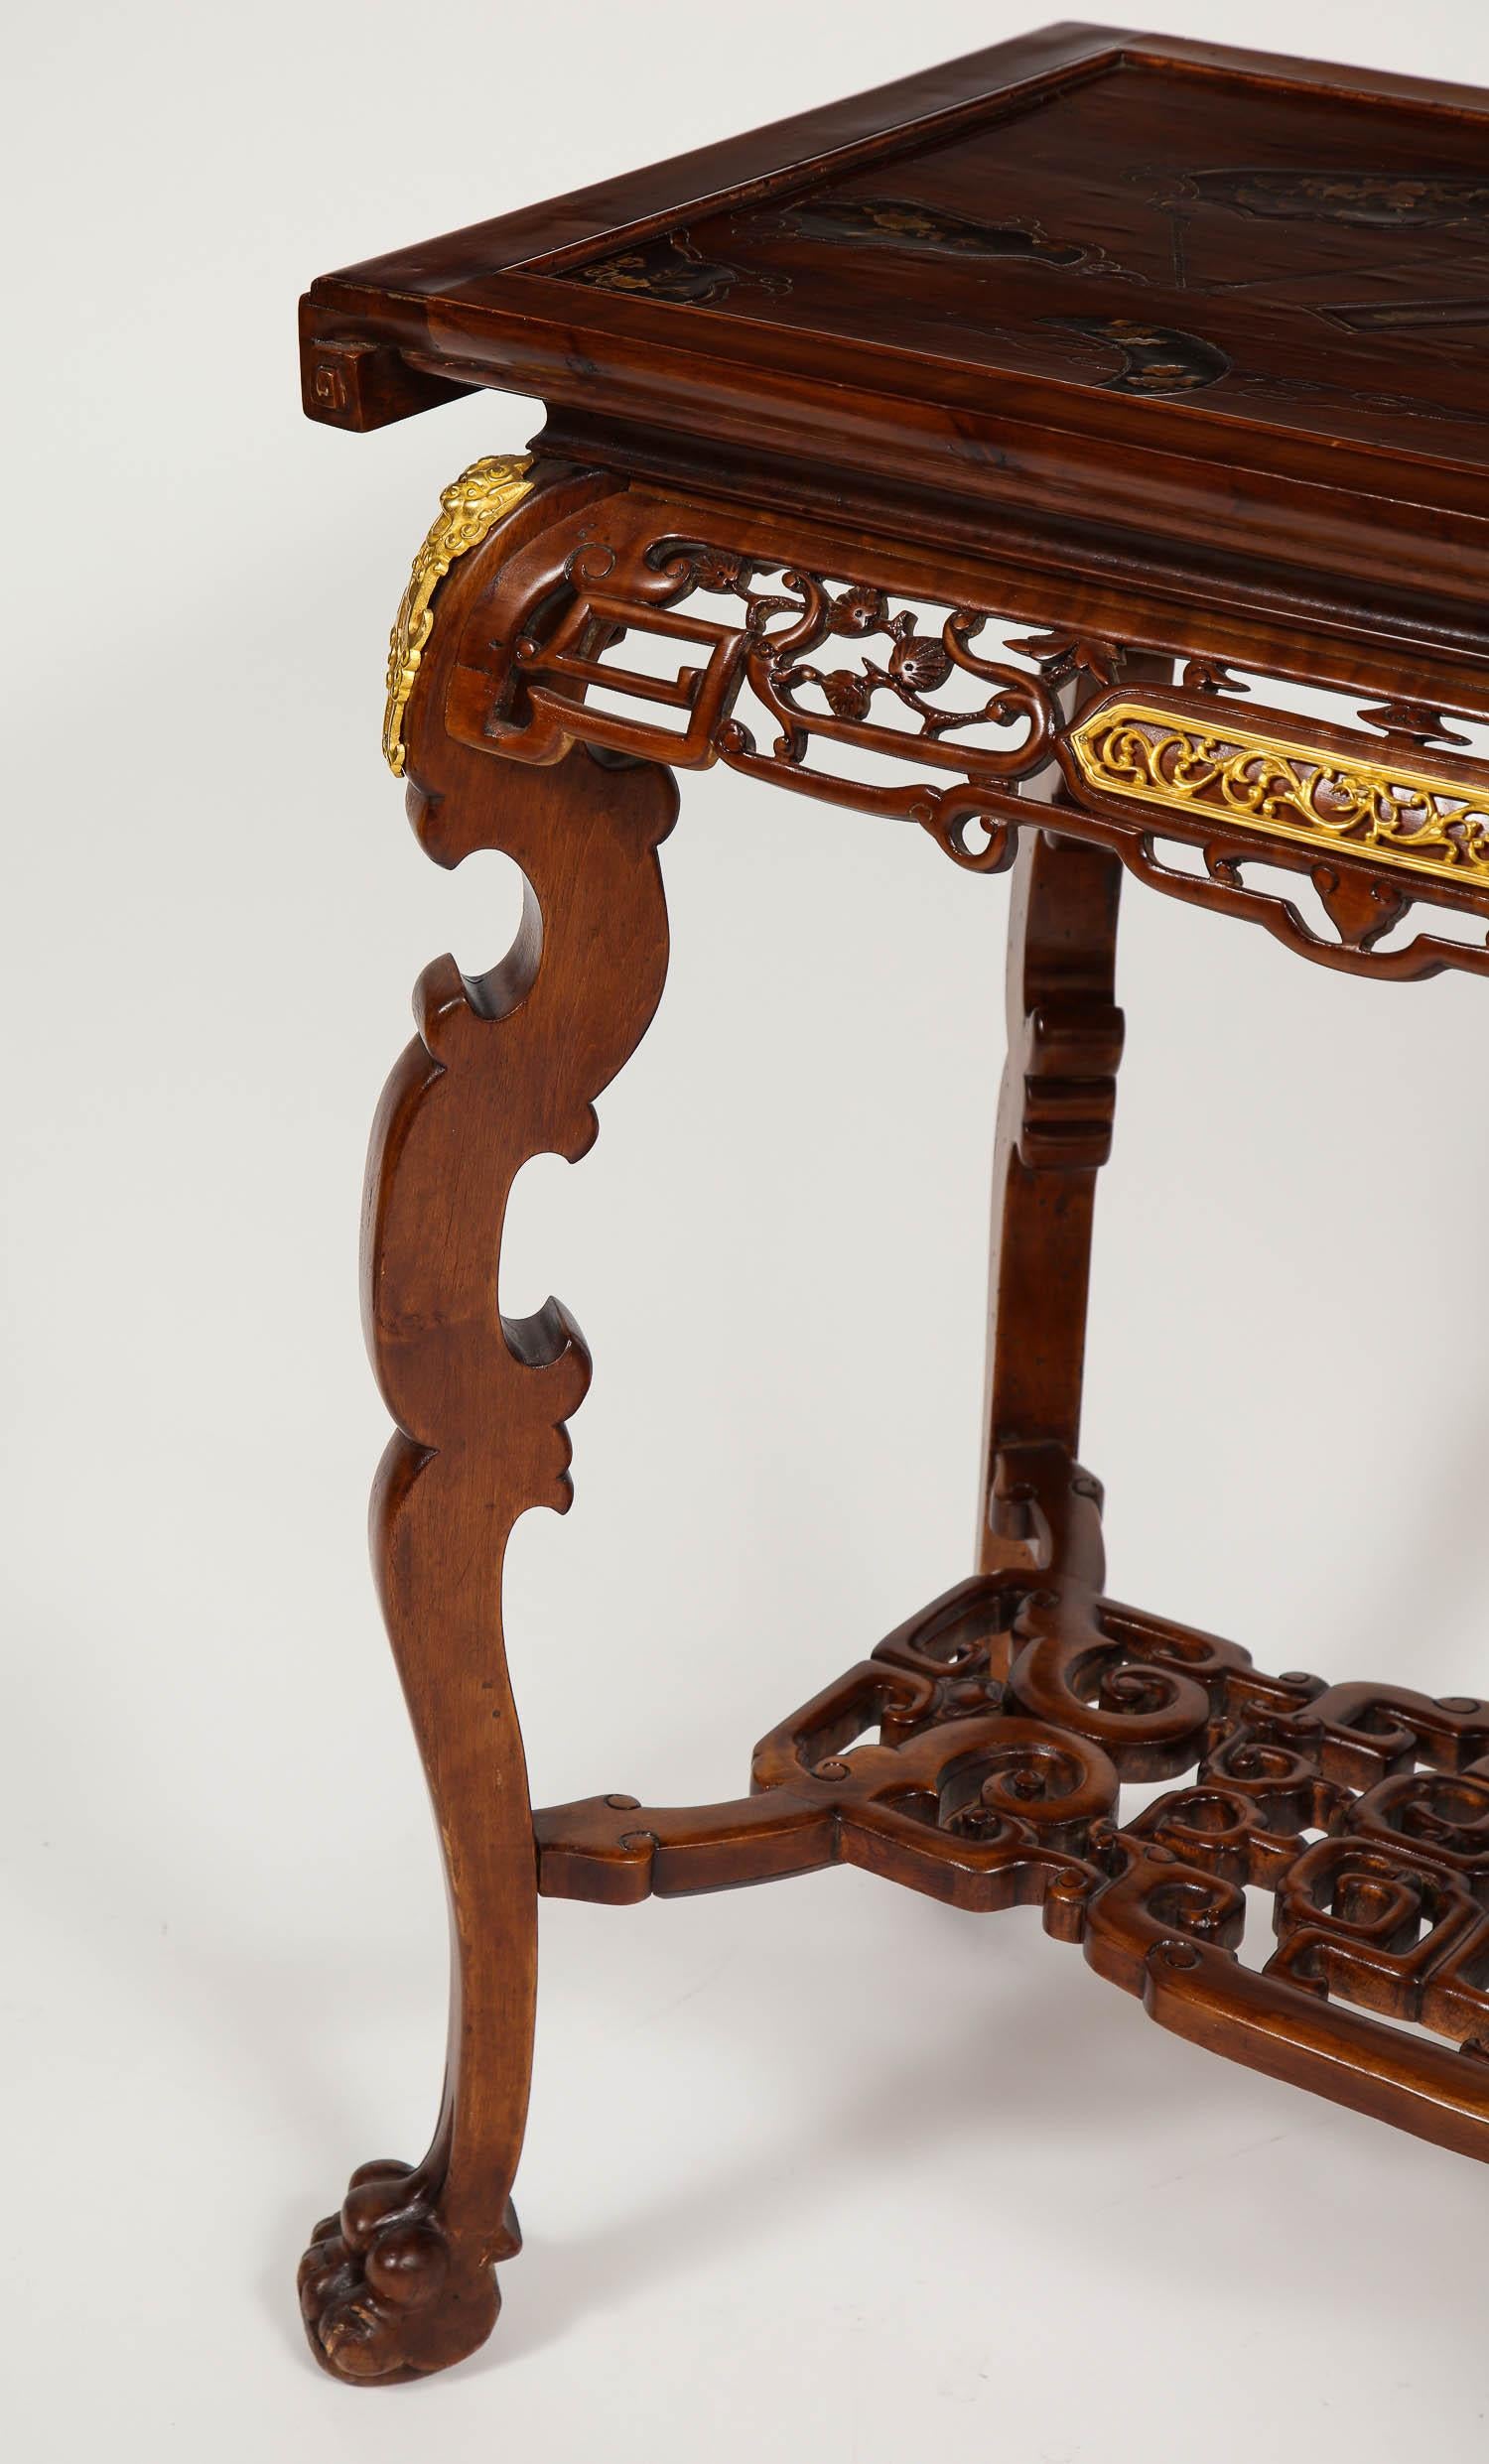 Ein prächtiger französischer, handgeschnitzter Mahagoni-Mitteltisch im Chinoiserie-Stil des 19. Jahrhunderts mit einer perlmuttfarbenen Intarsienplatte, die Gabriel Viardot zugeschrieben wird. Dieser prächtige Mahagoni-Tisch wurde von Hand mit